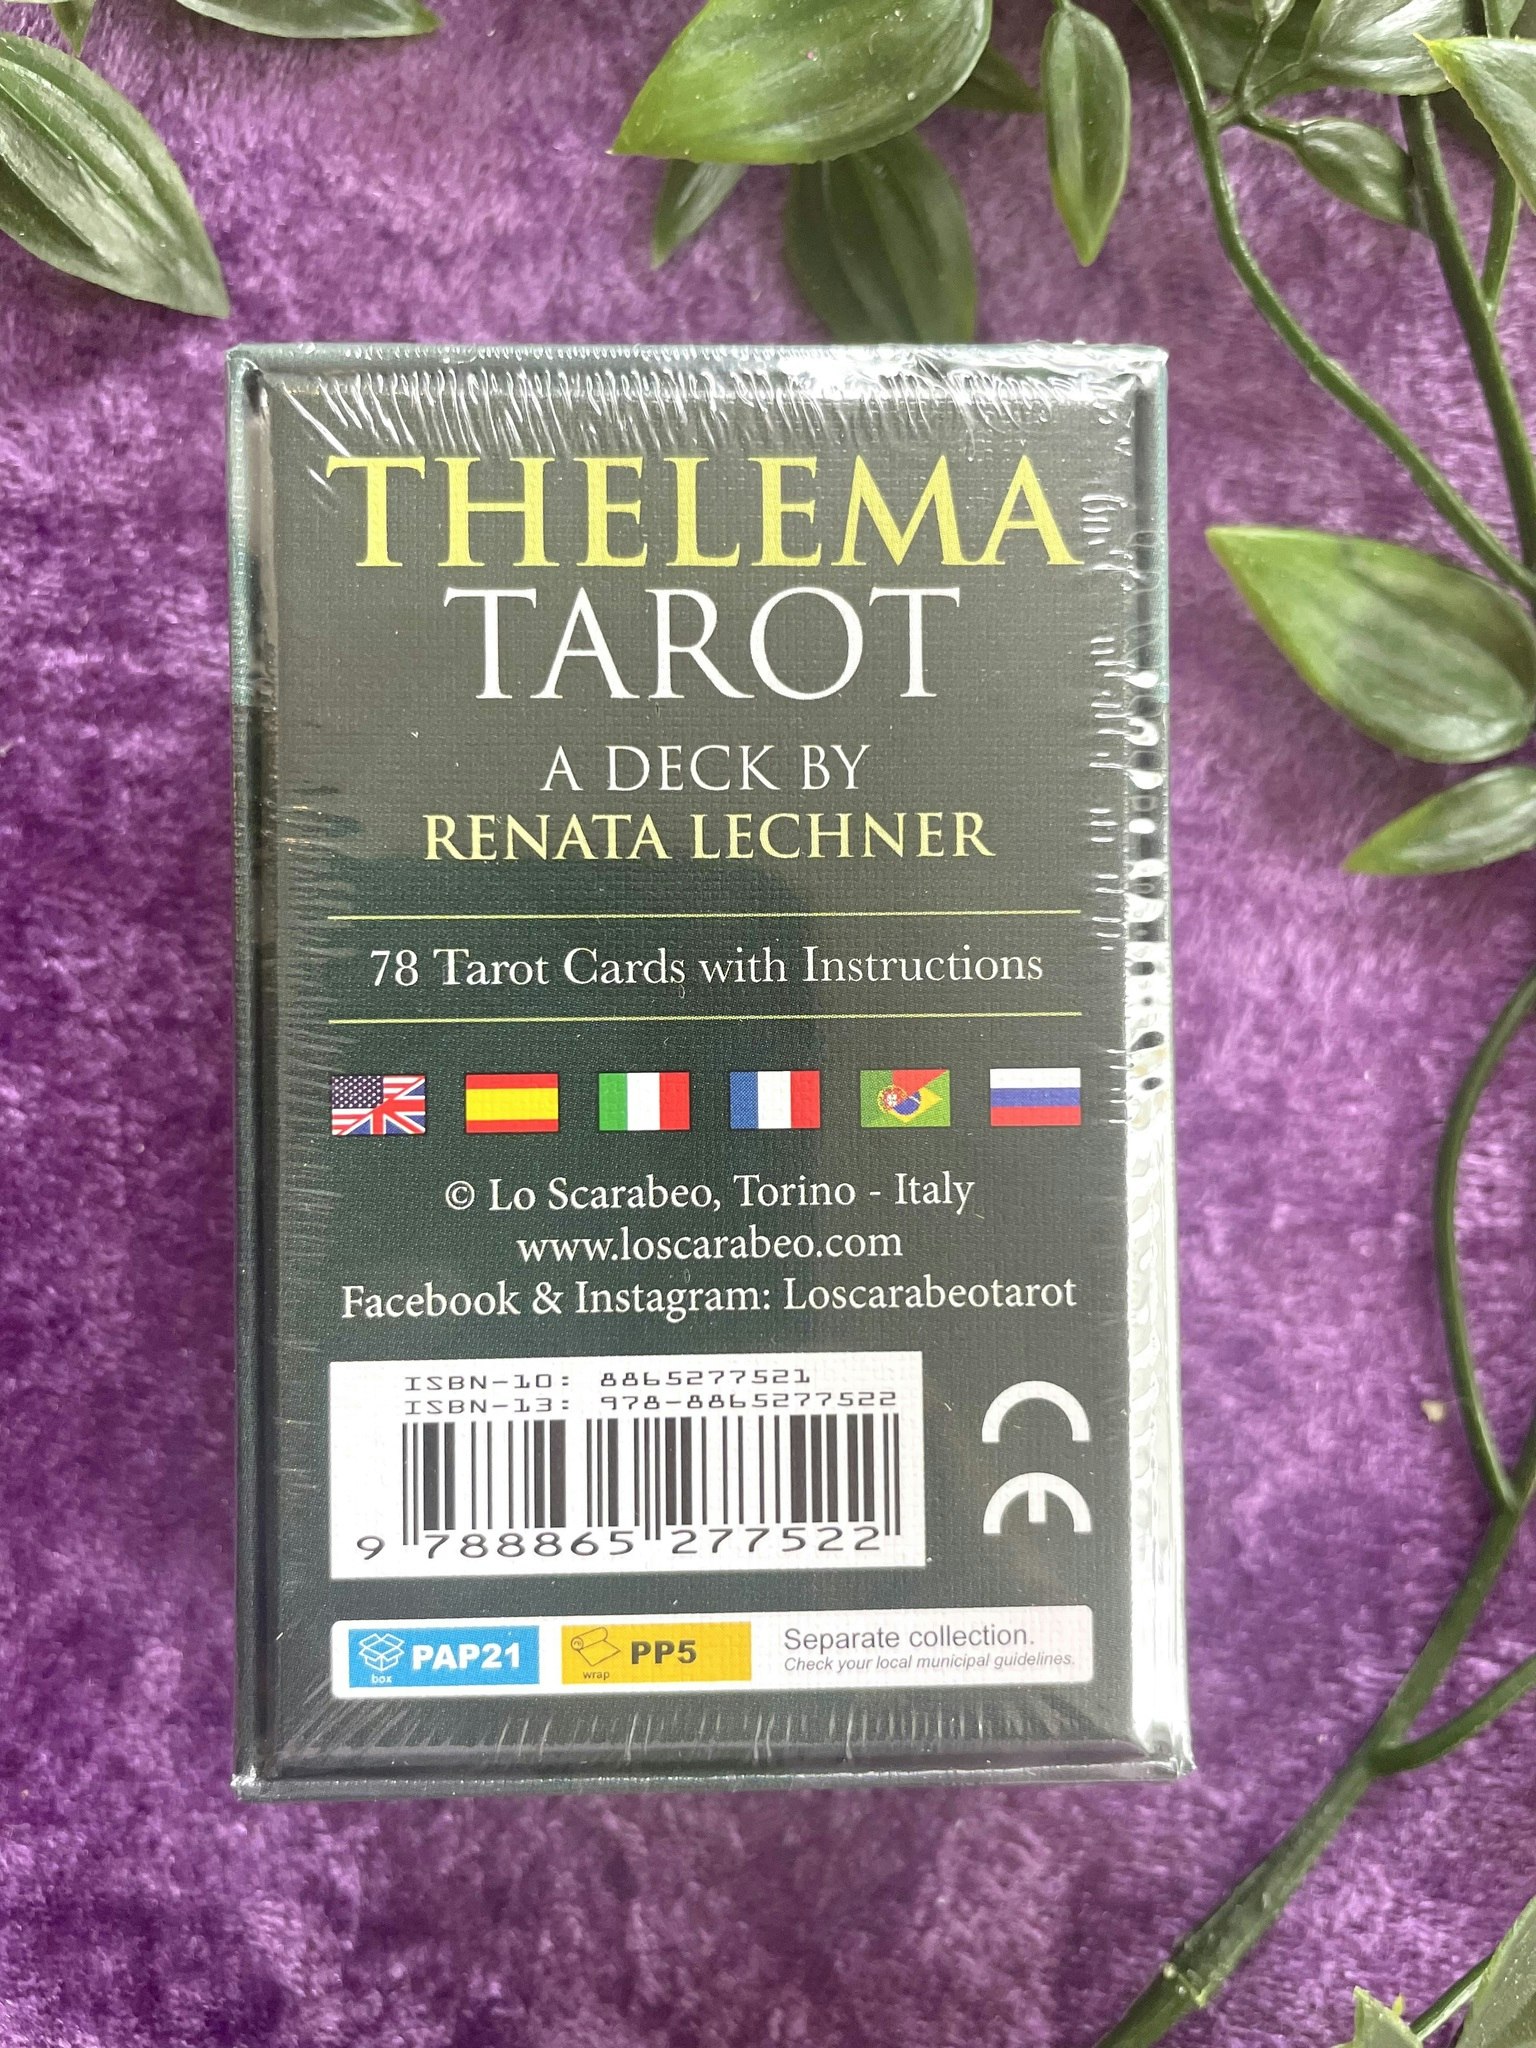 Thelema Tarot Pocketsize